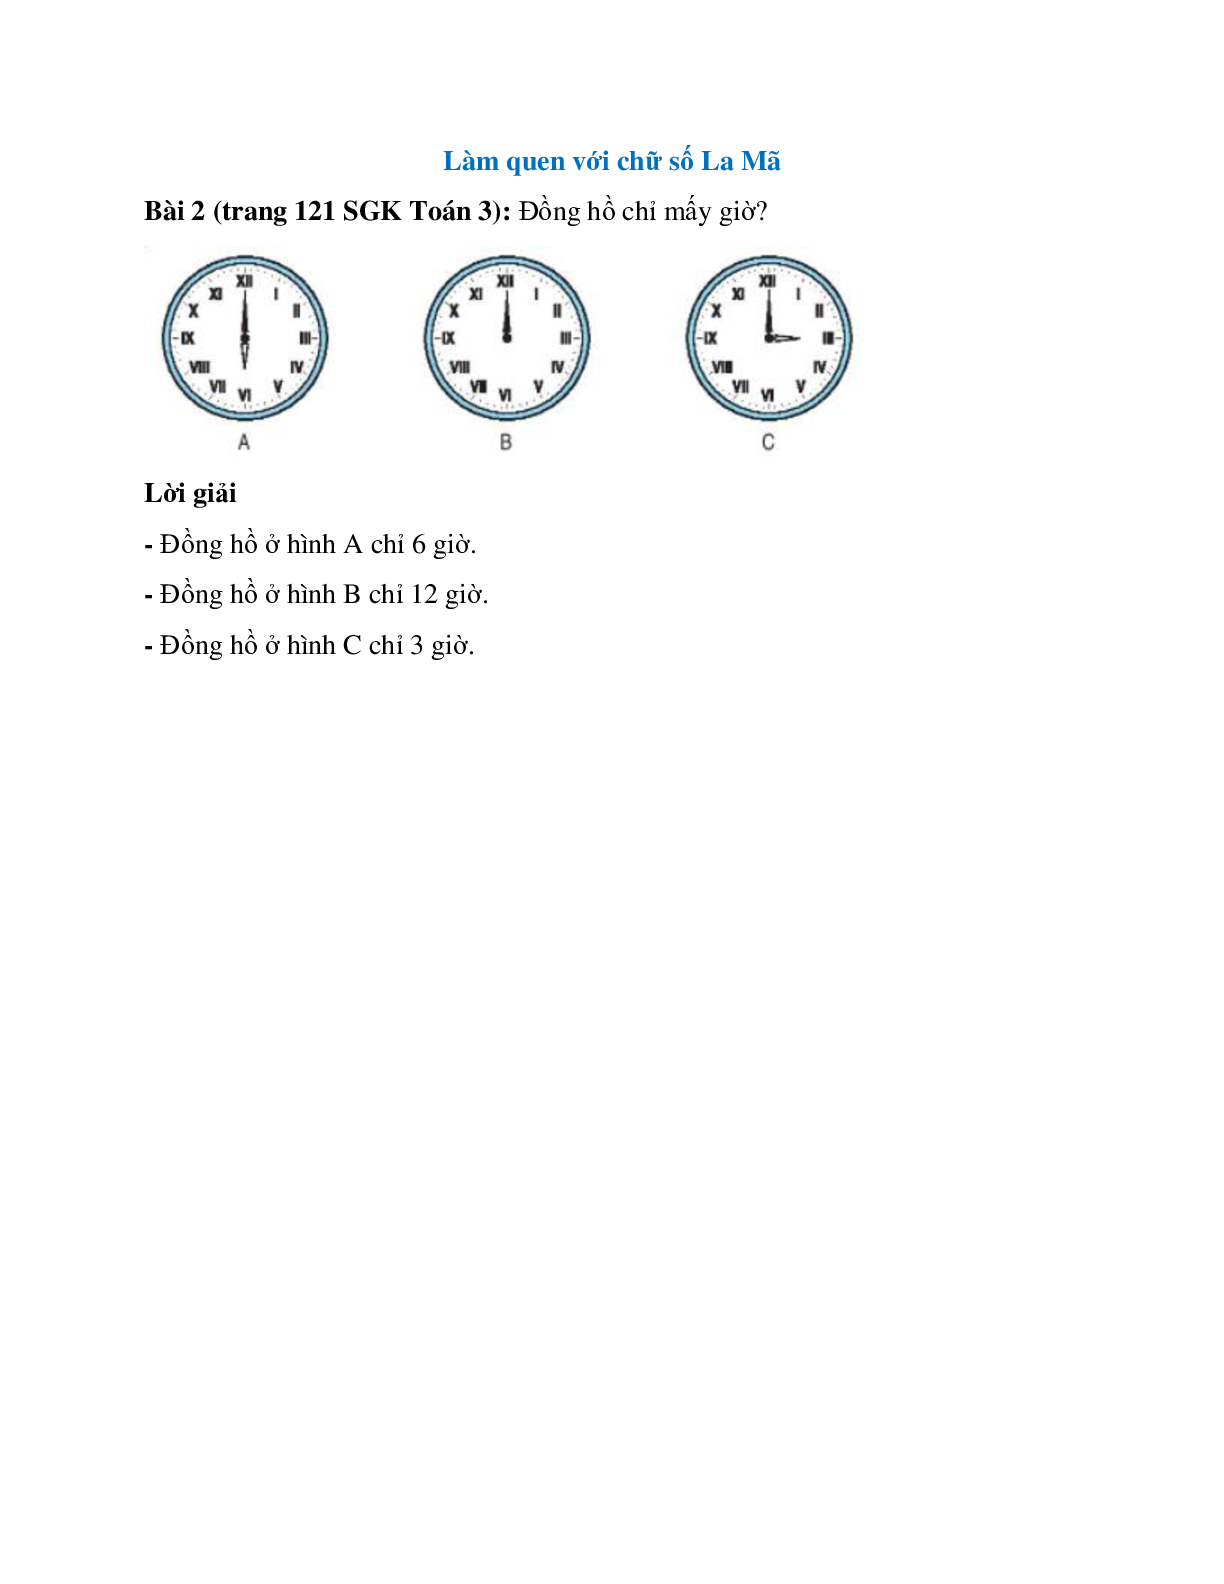 Đồng hồ chỉ mấy giờ Bài 2 trang 121 SGK Toán 3 (trang 1)